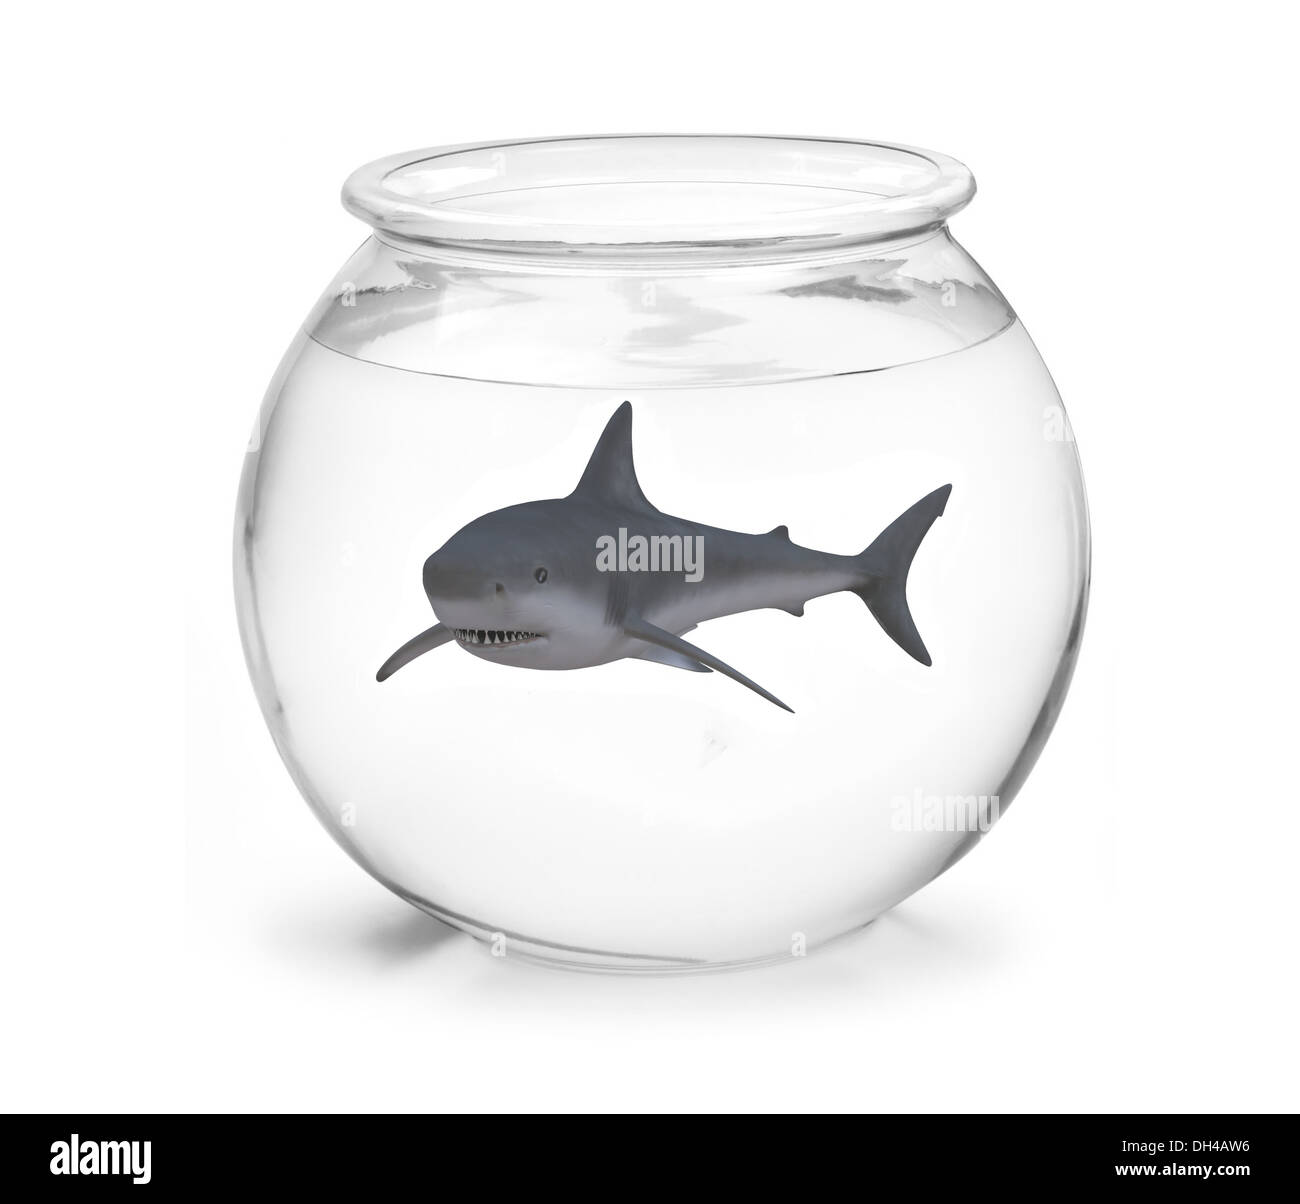 Acuario con tiburon Imágenes recortadas de stock - Página 3 - Alamy